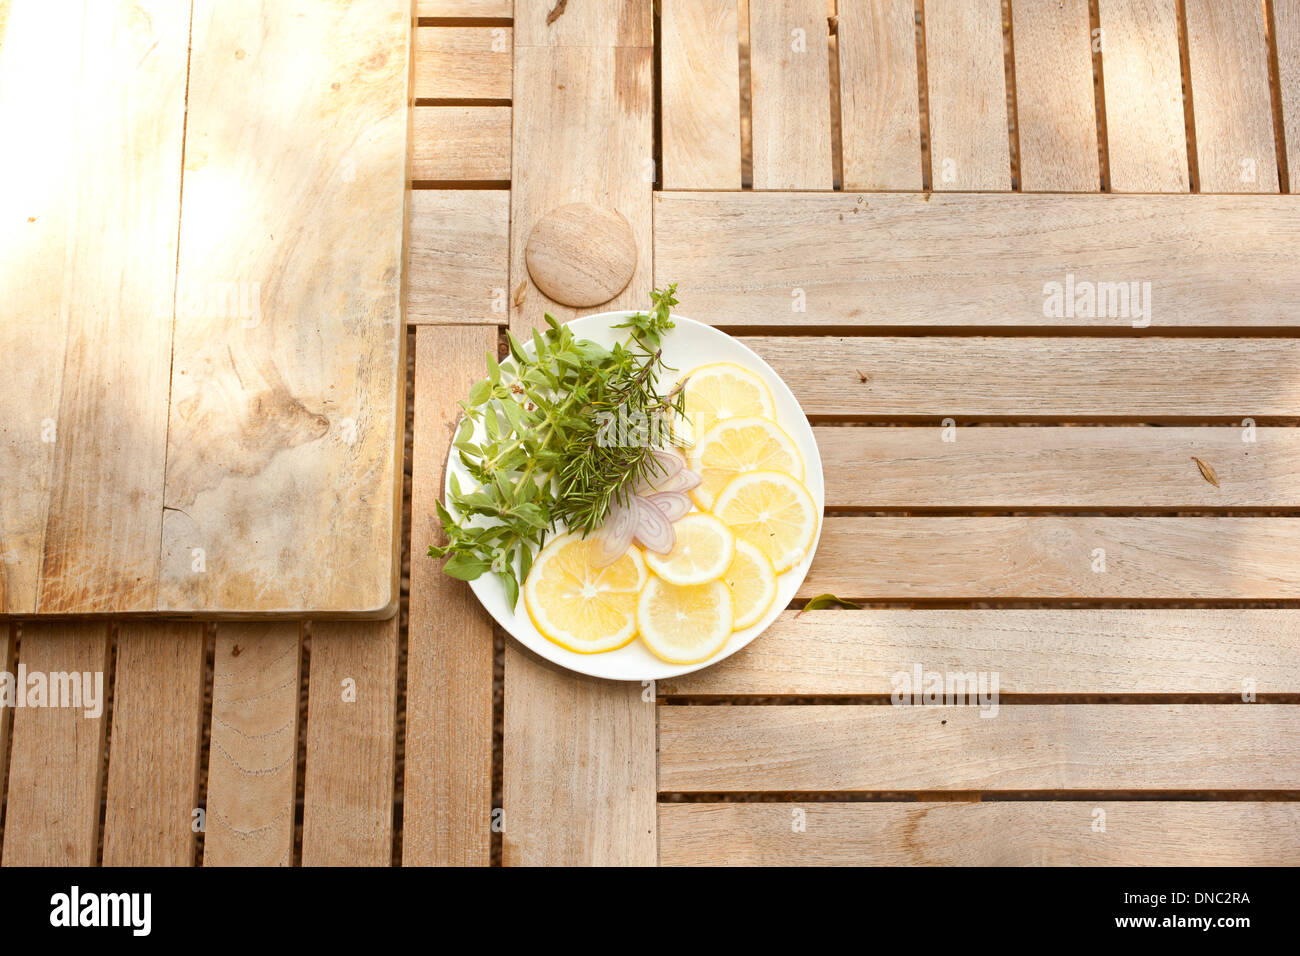 Zitronenscheiben mit frischen Kräutern auf weißen Teller Overhead-Projektor Stockfoto